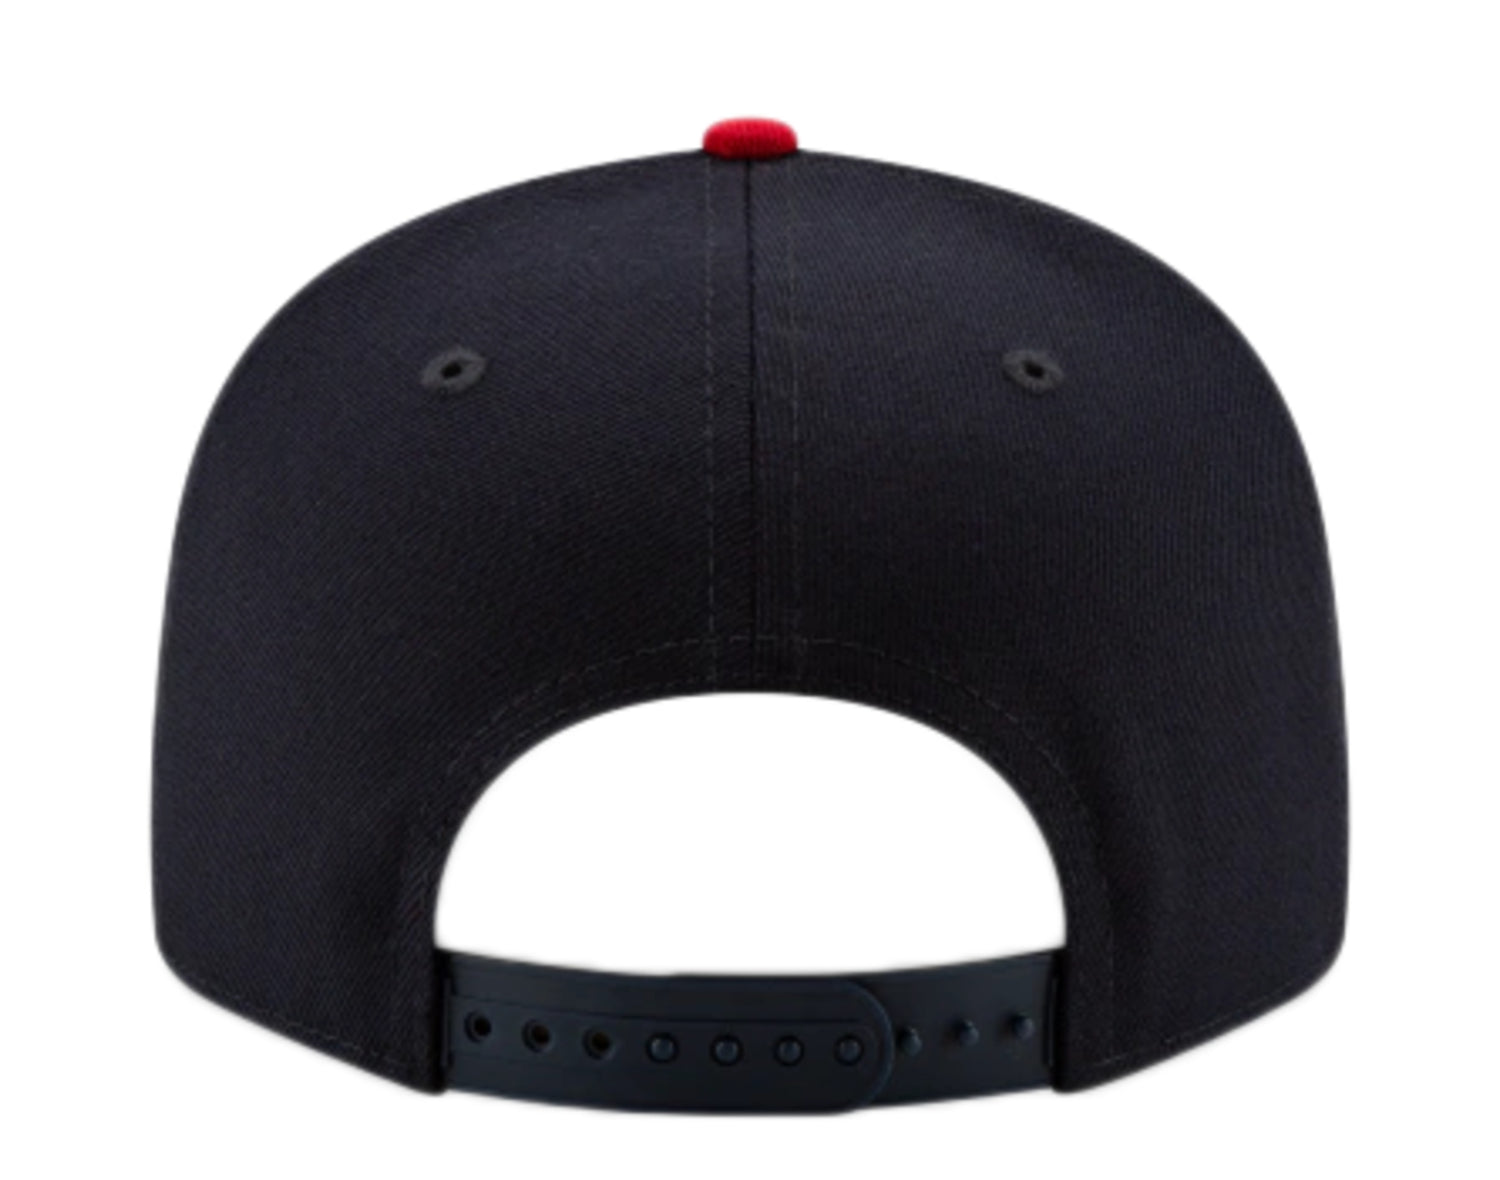 New Era 9Fifty MLB Cleveland Indians Basic Snapback Hat